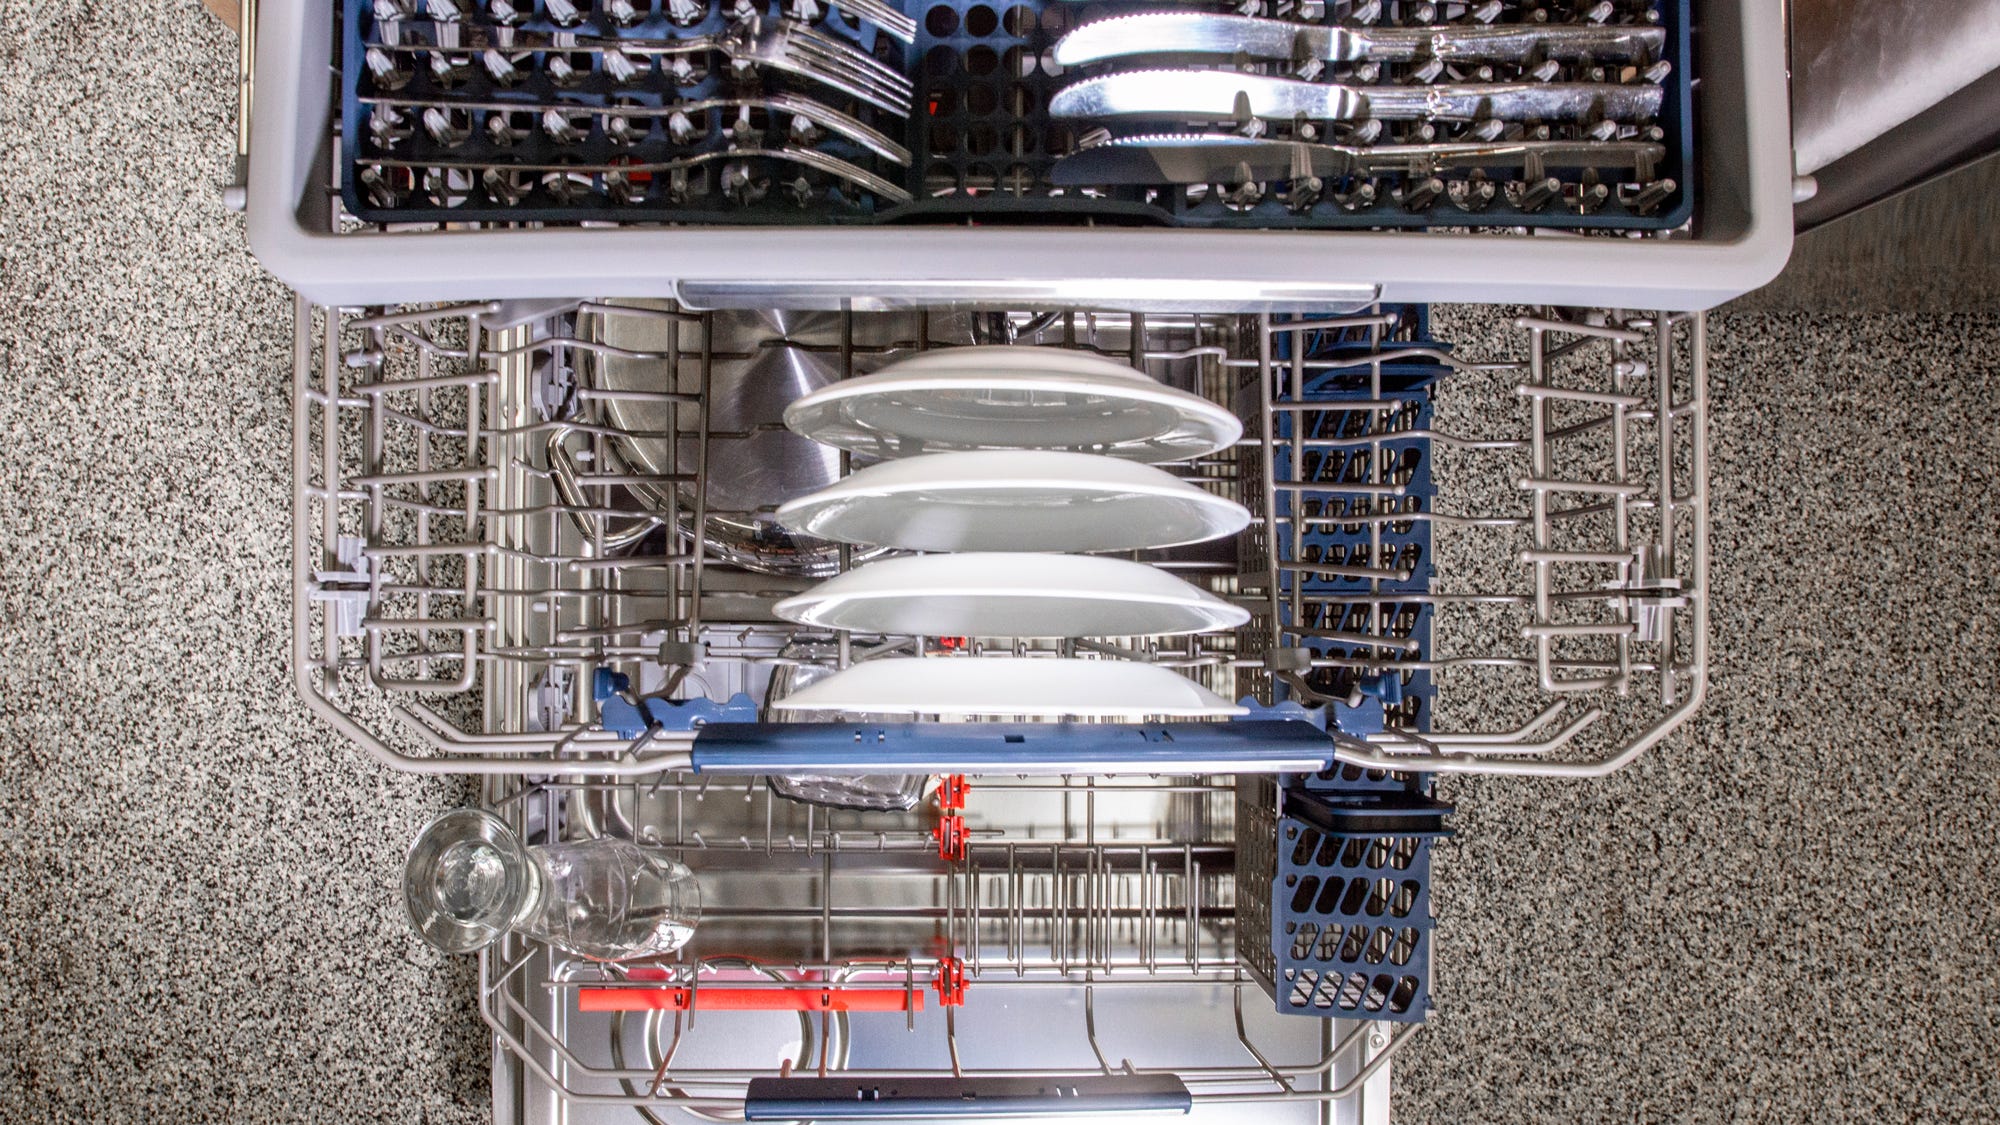 best large capacity dishwasher